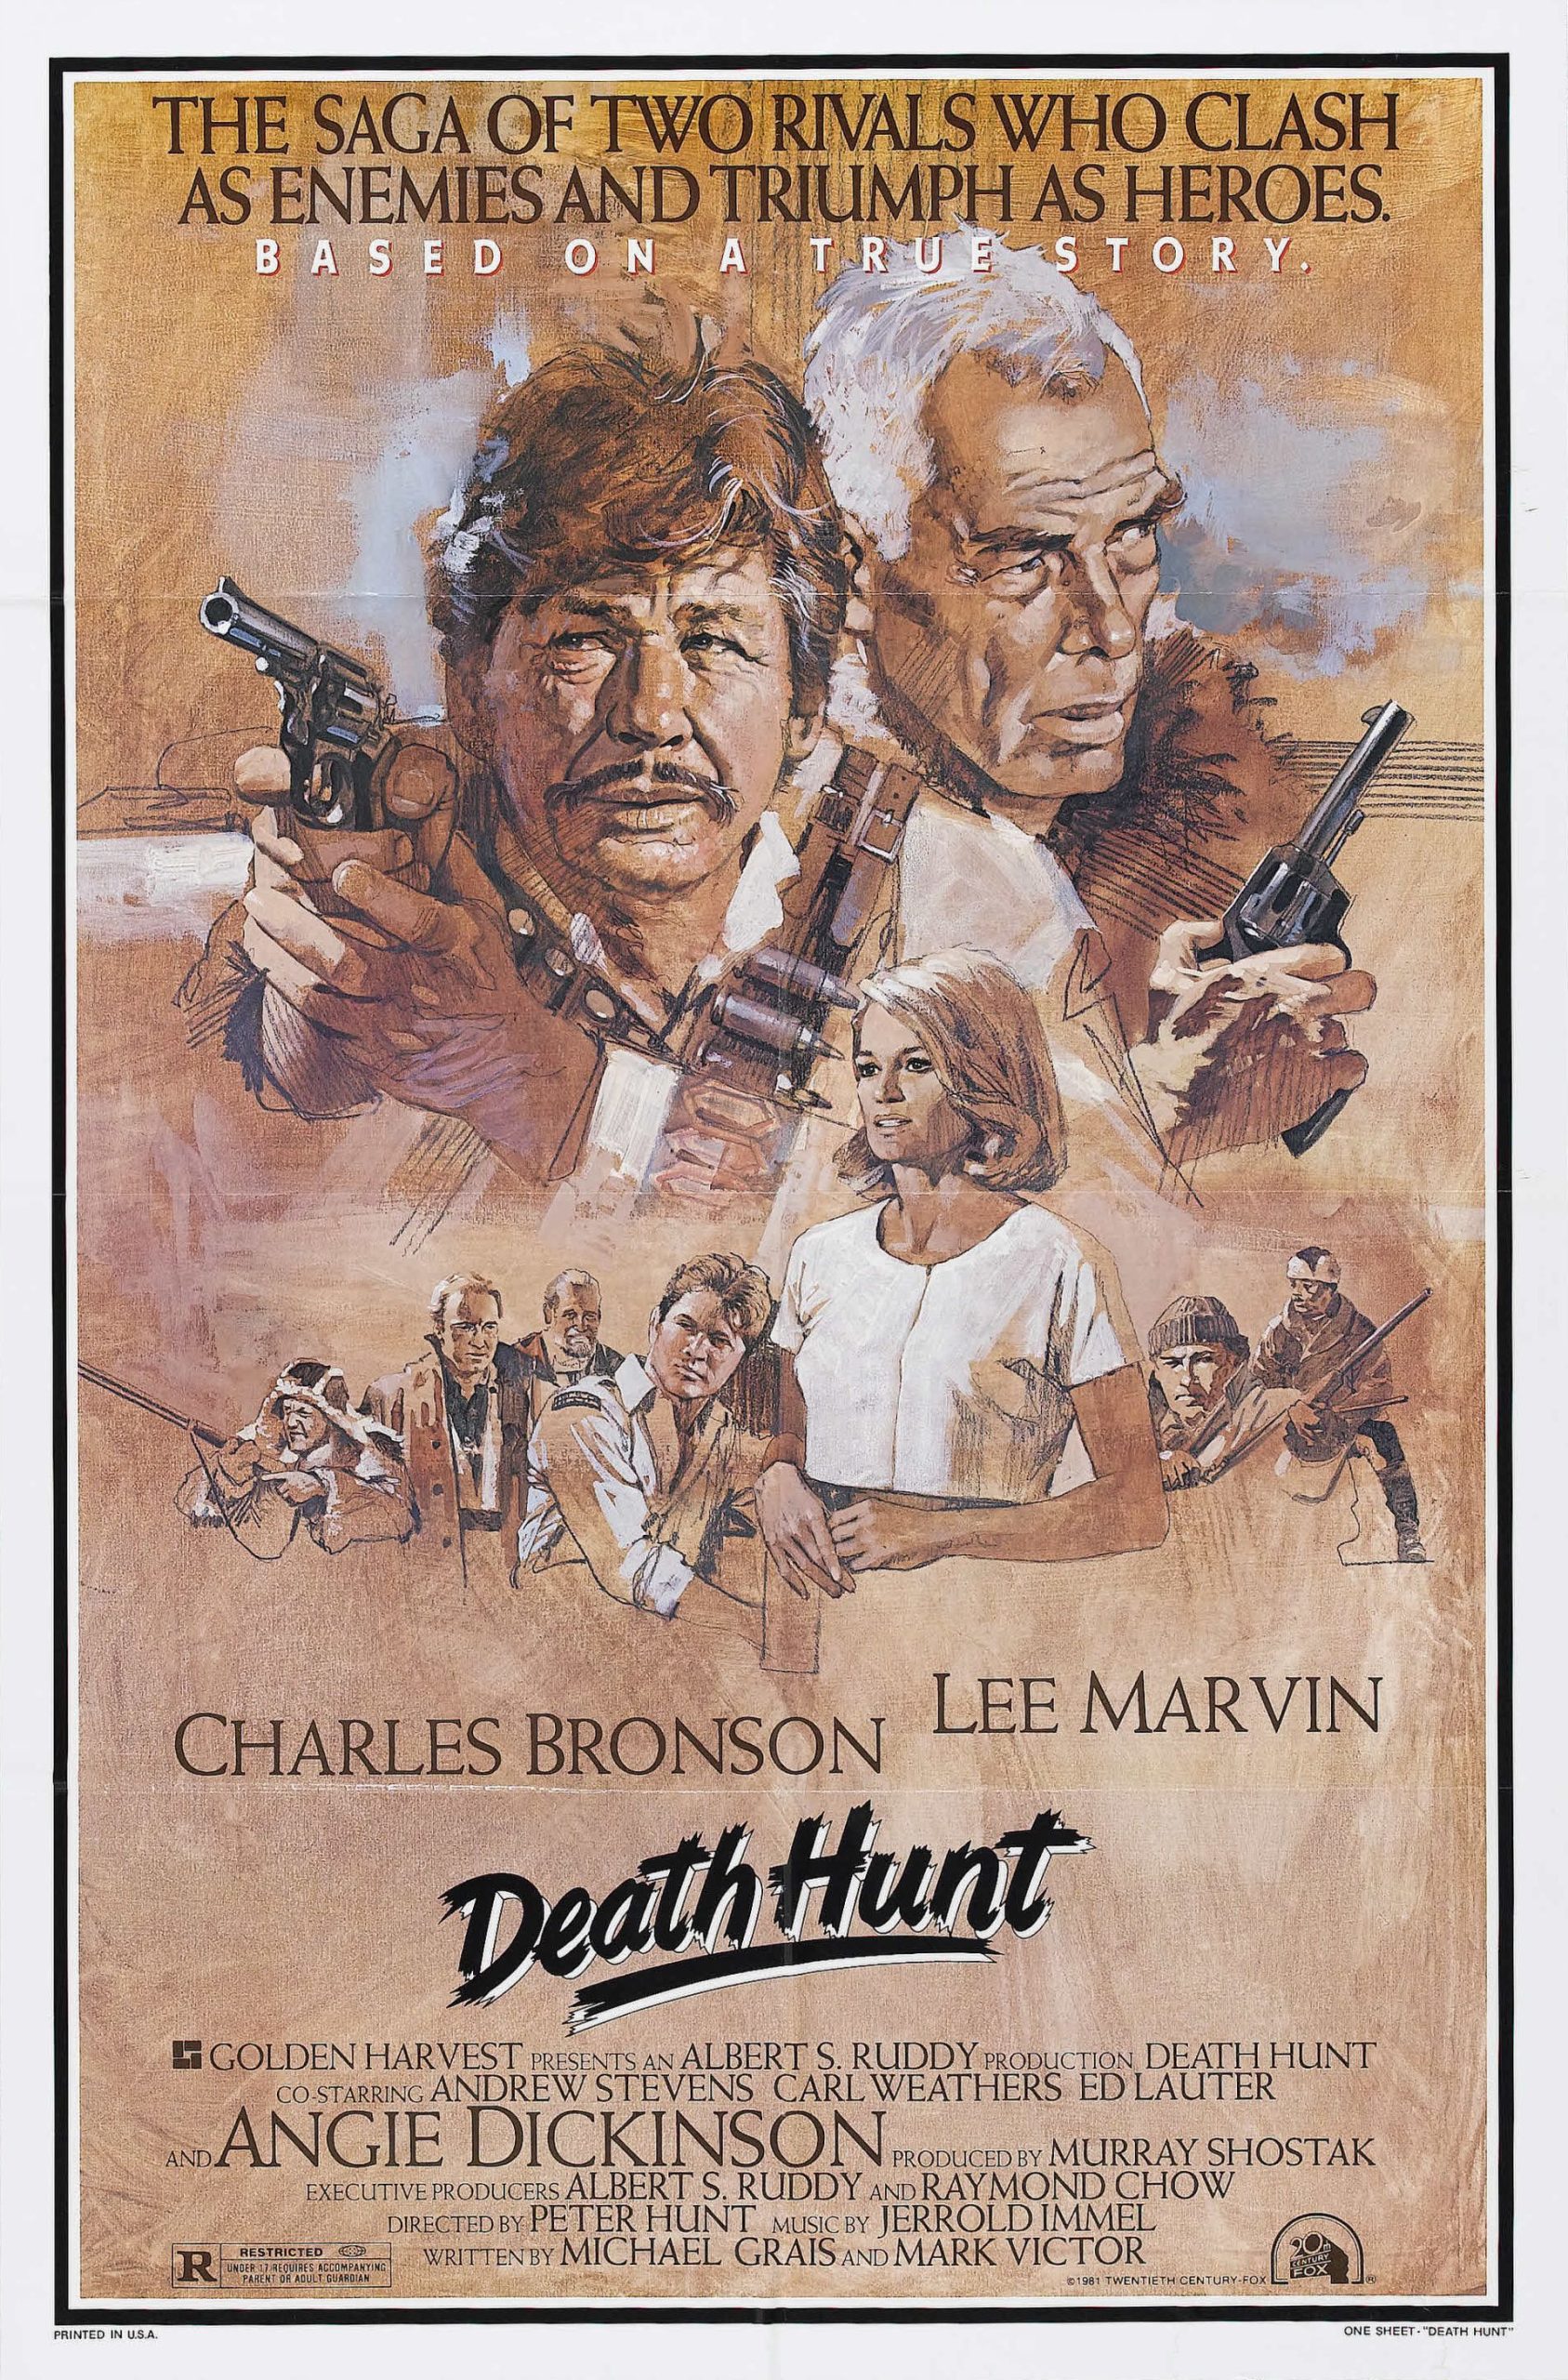 ดูหนังออนไลน์ฟรี Death Hunt (1981) เดธ ฮันท์ หนังเต็มเรื่อง หนังมาสเตอร์ ดูหนังHD ดูหนังออนไลน์ ดูหนังใหม่